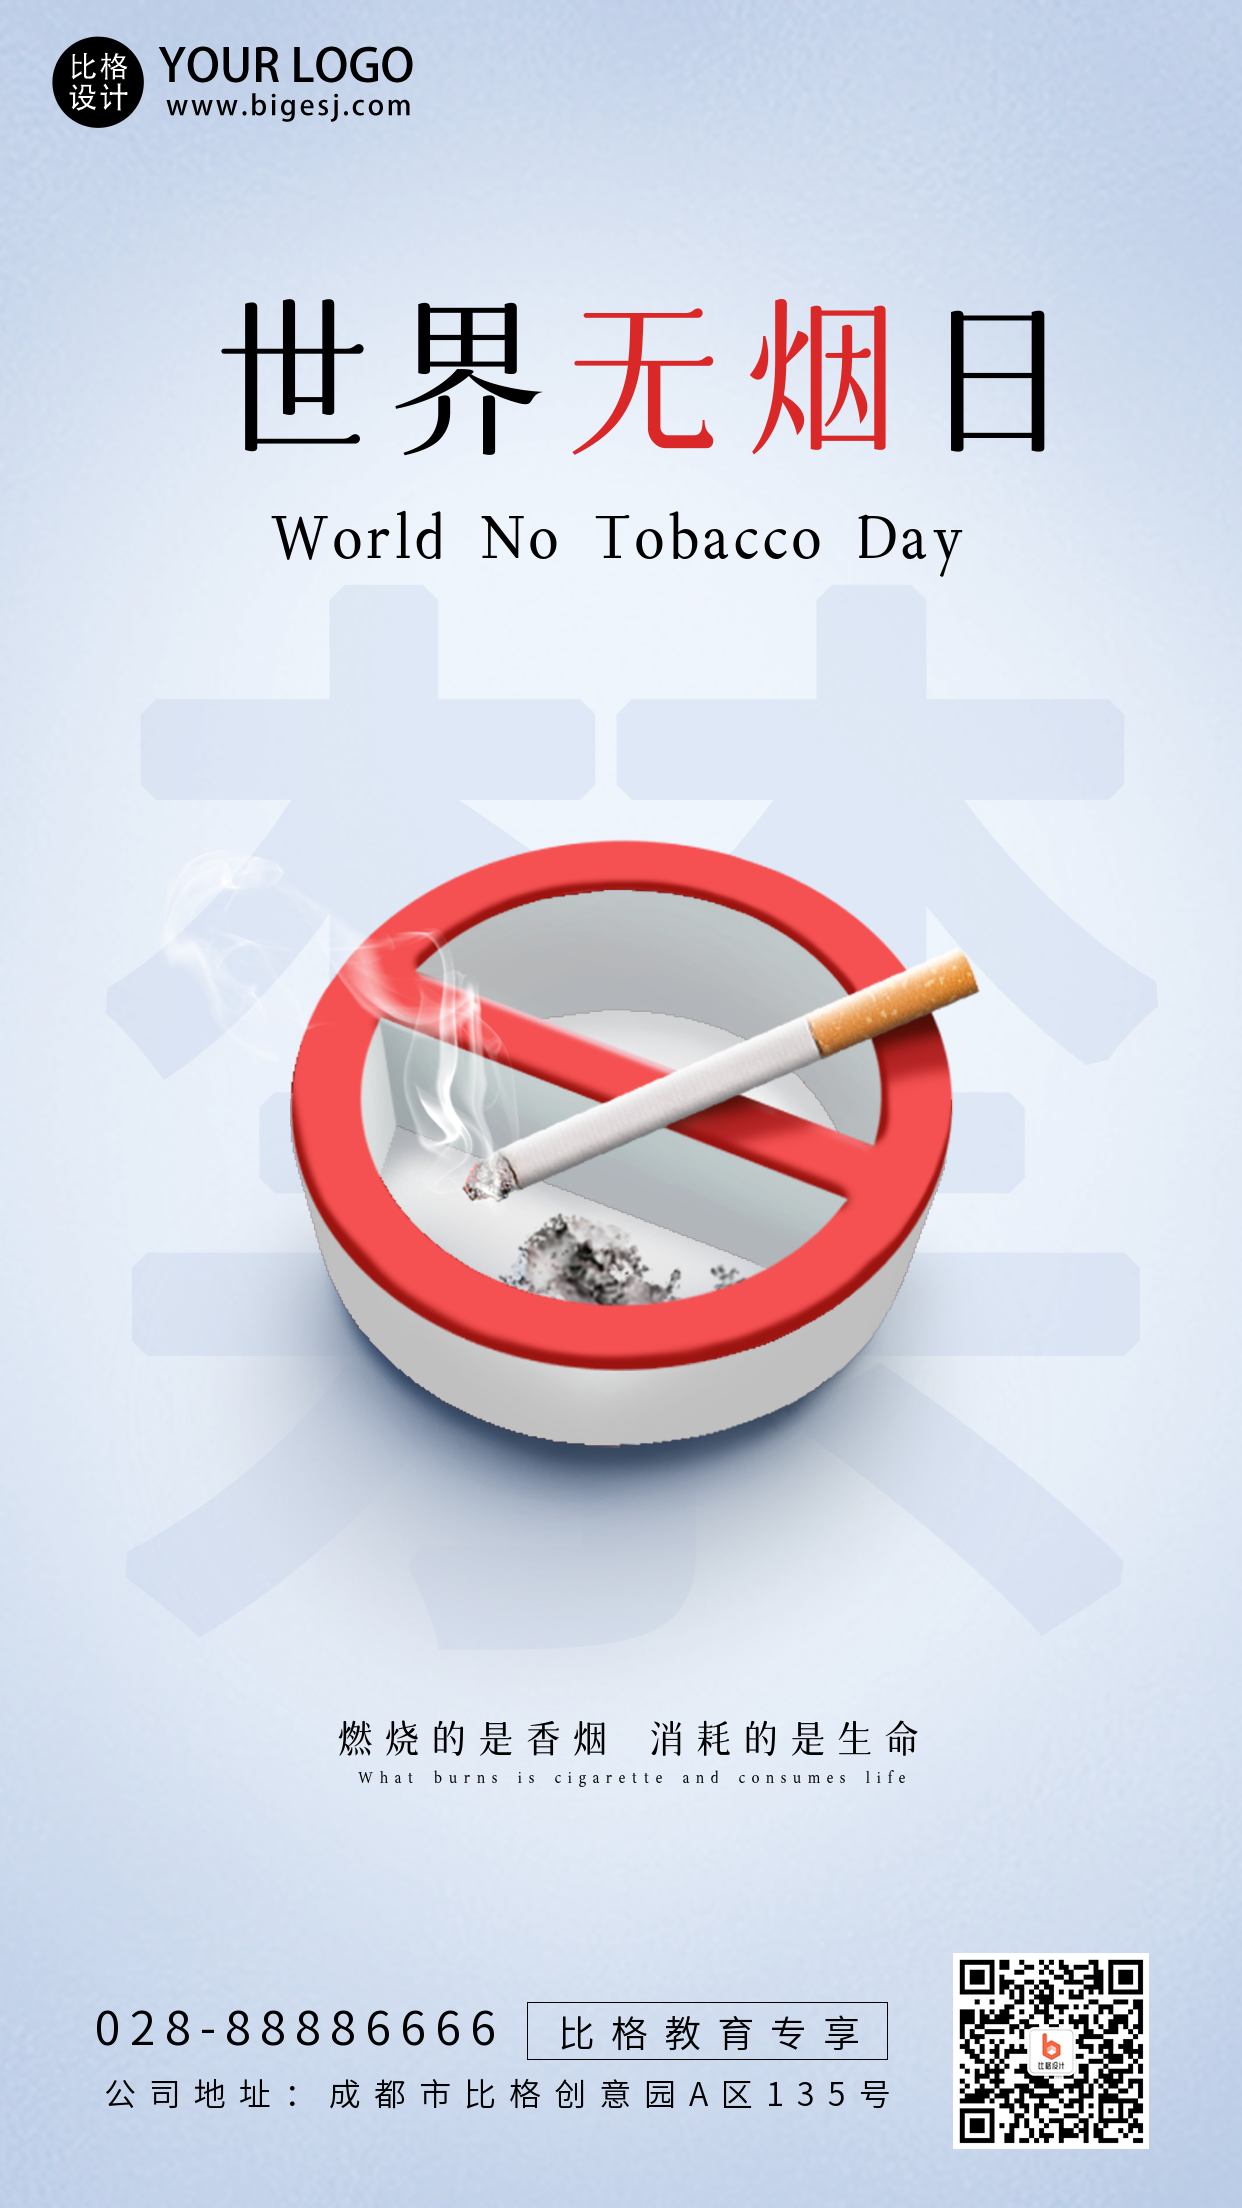 世界无烟日禁止吸烟文案宣传公益手机海报